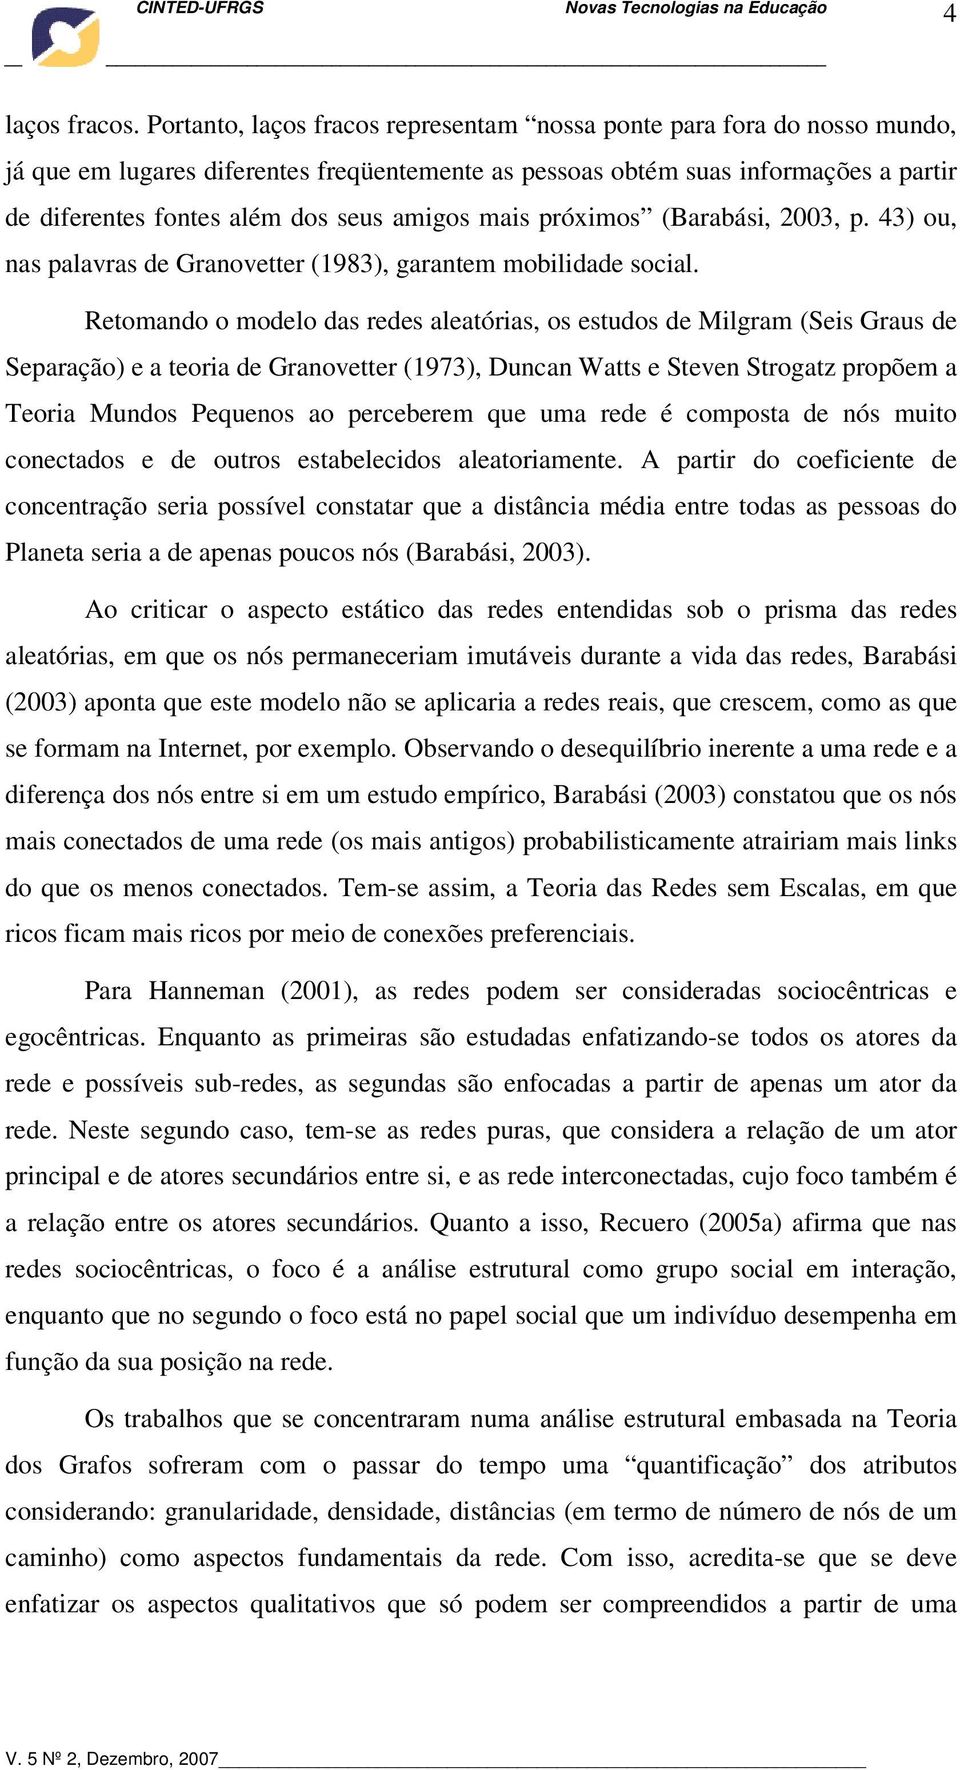 amigos mais próximos (Barabási, 2003, p. 43) ou, nas palavras de Granovetter (1983), garantem mobilidade social.